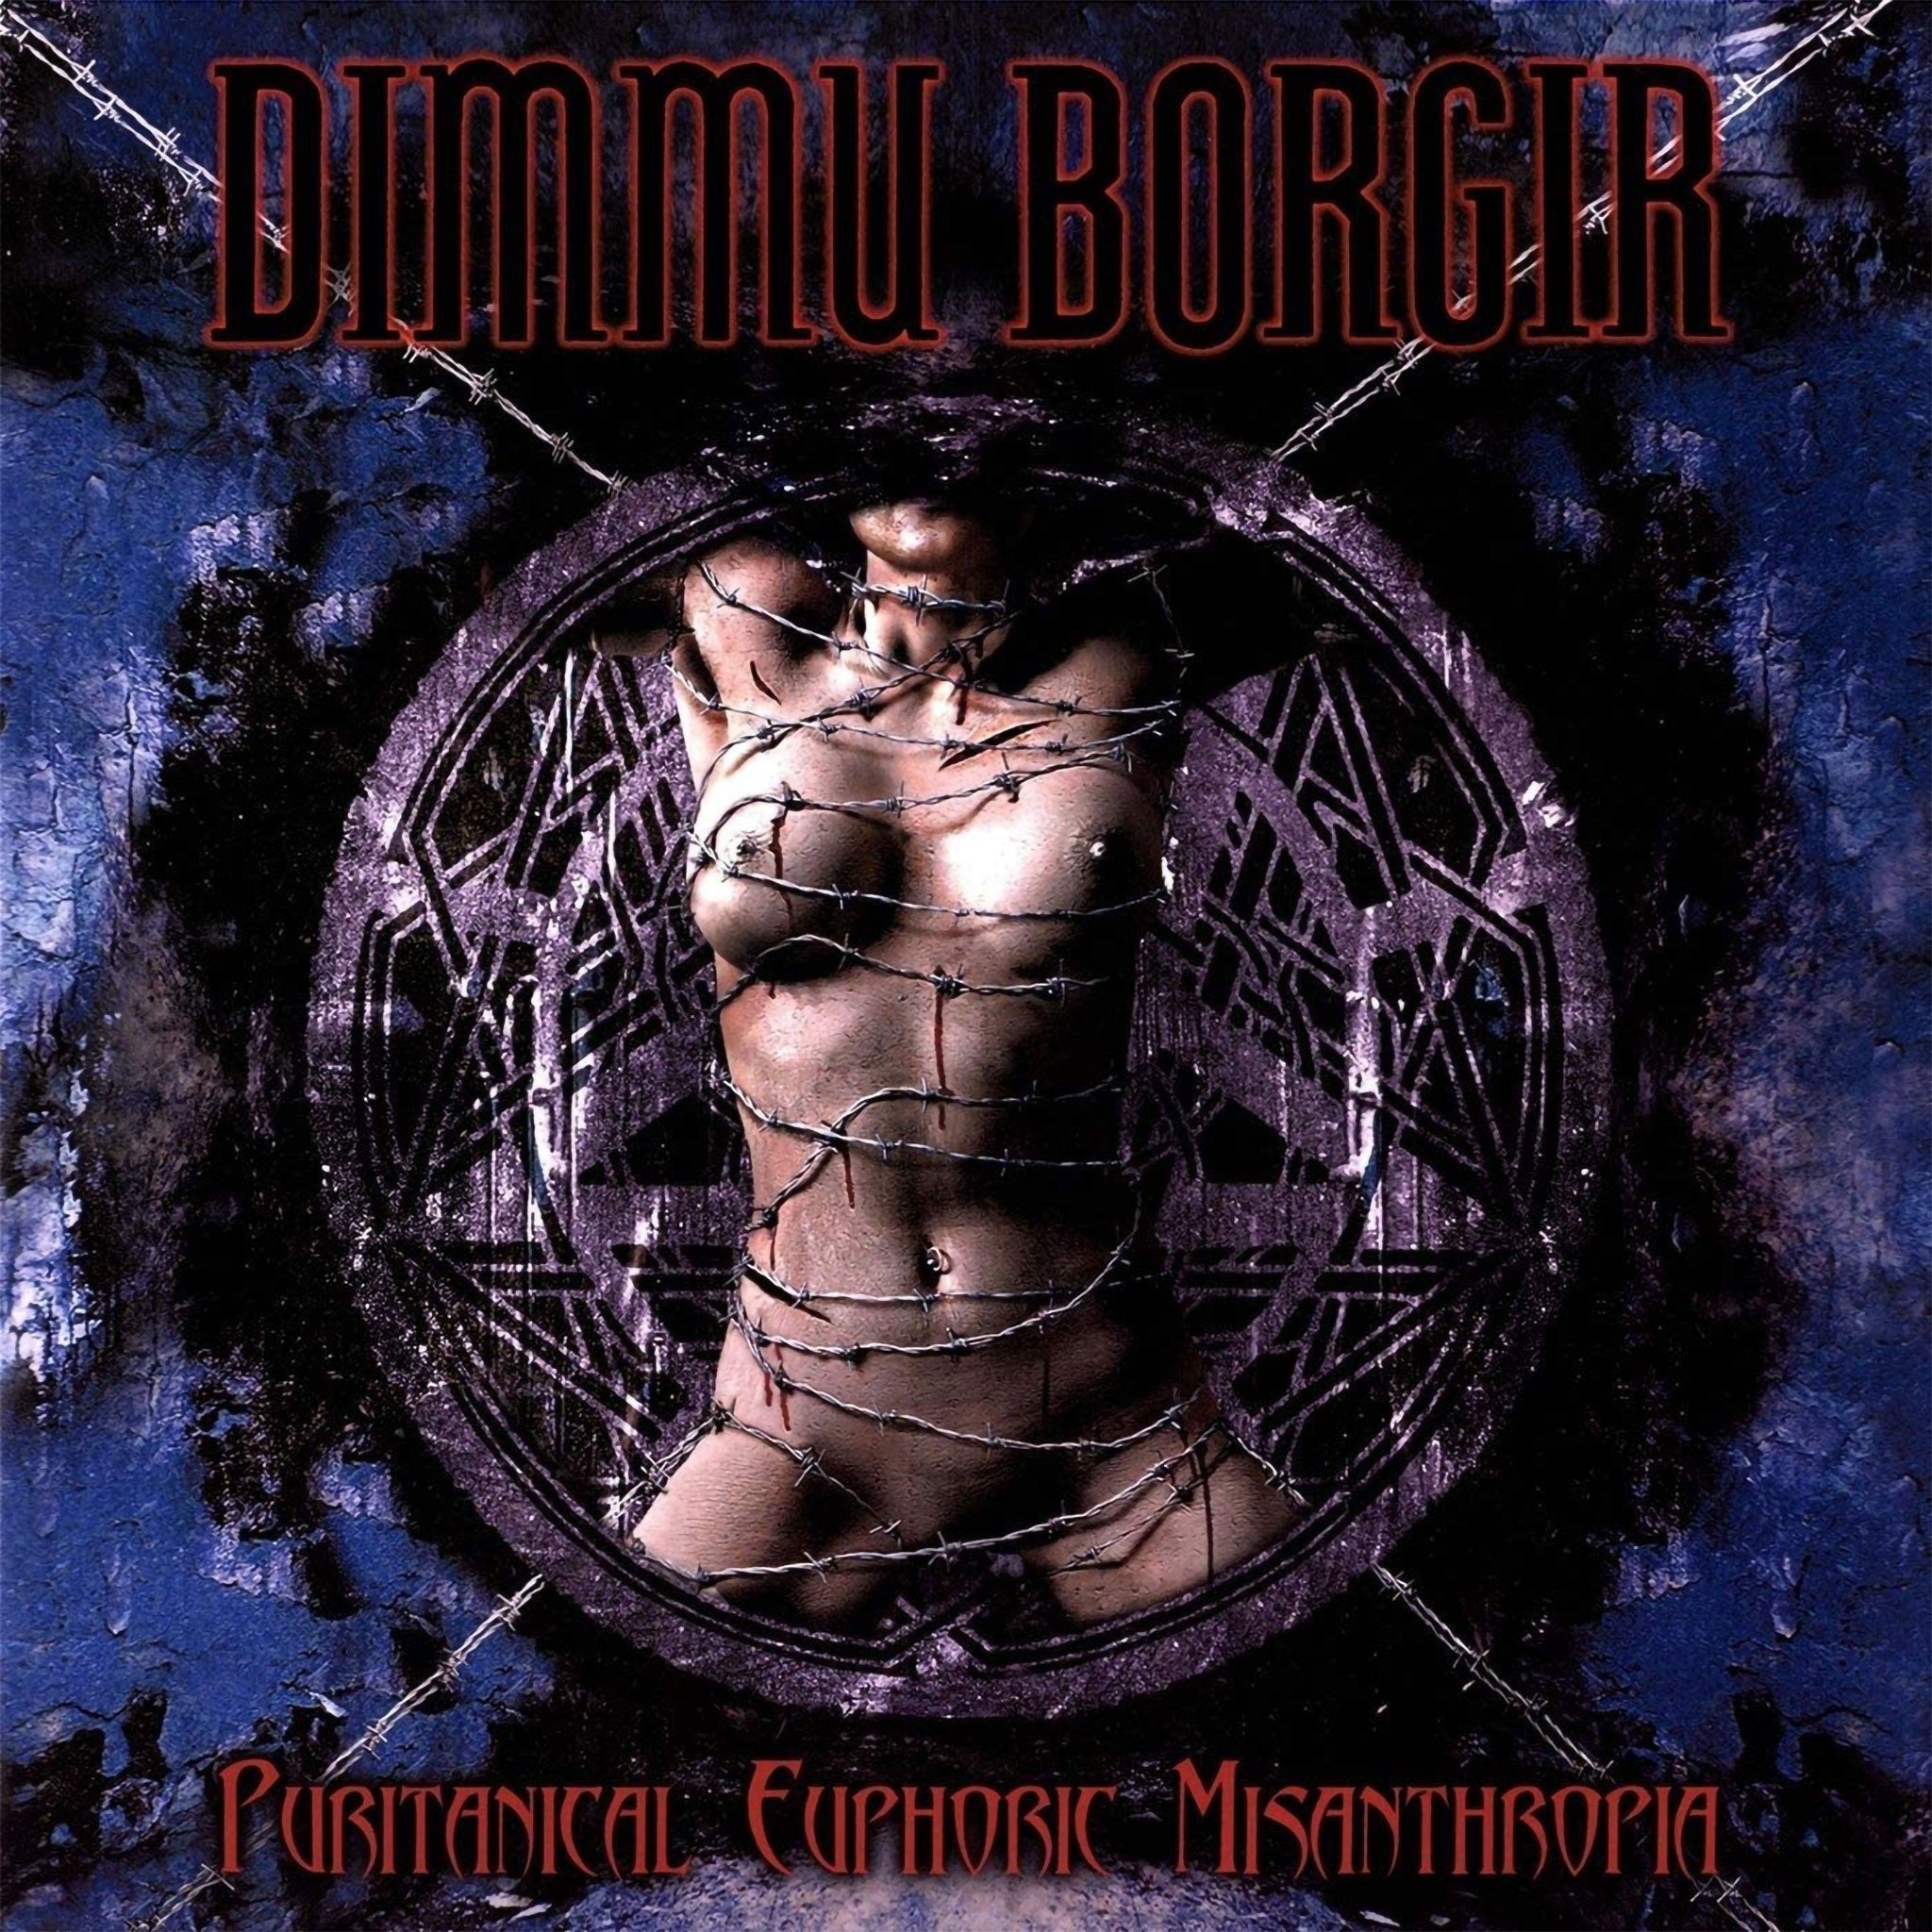 Dimmu Borgir - Puritanical Euphoric Misanthropia (2004 Reissue) (CD)